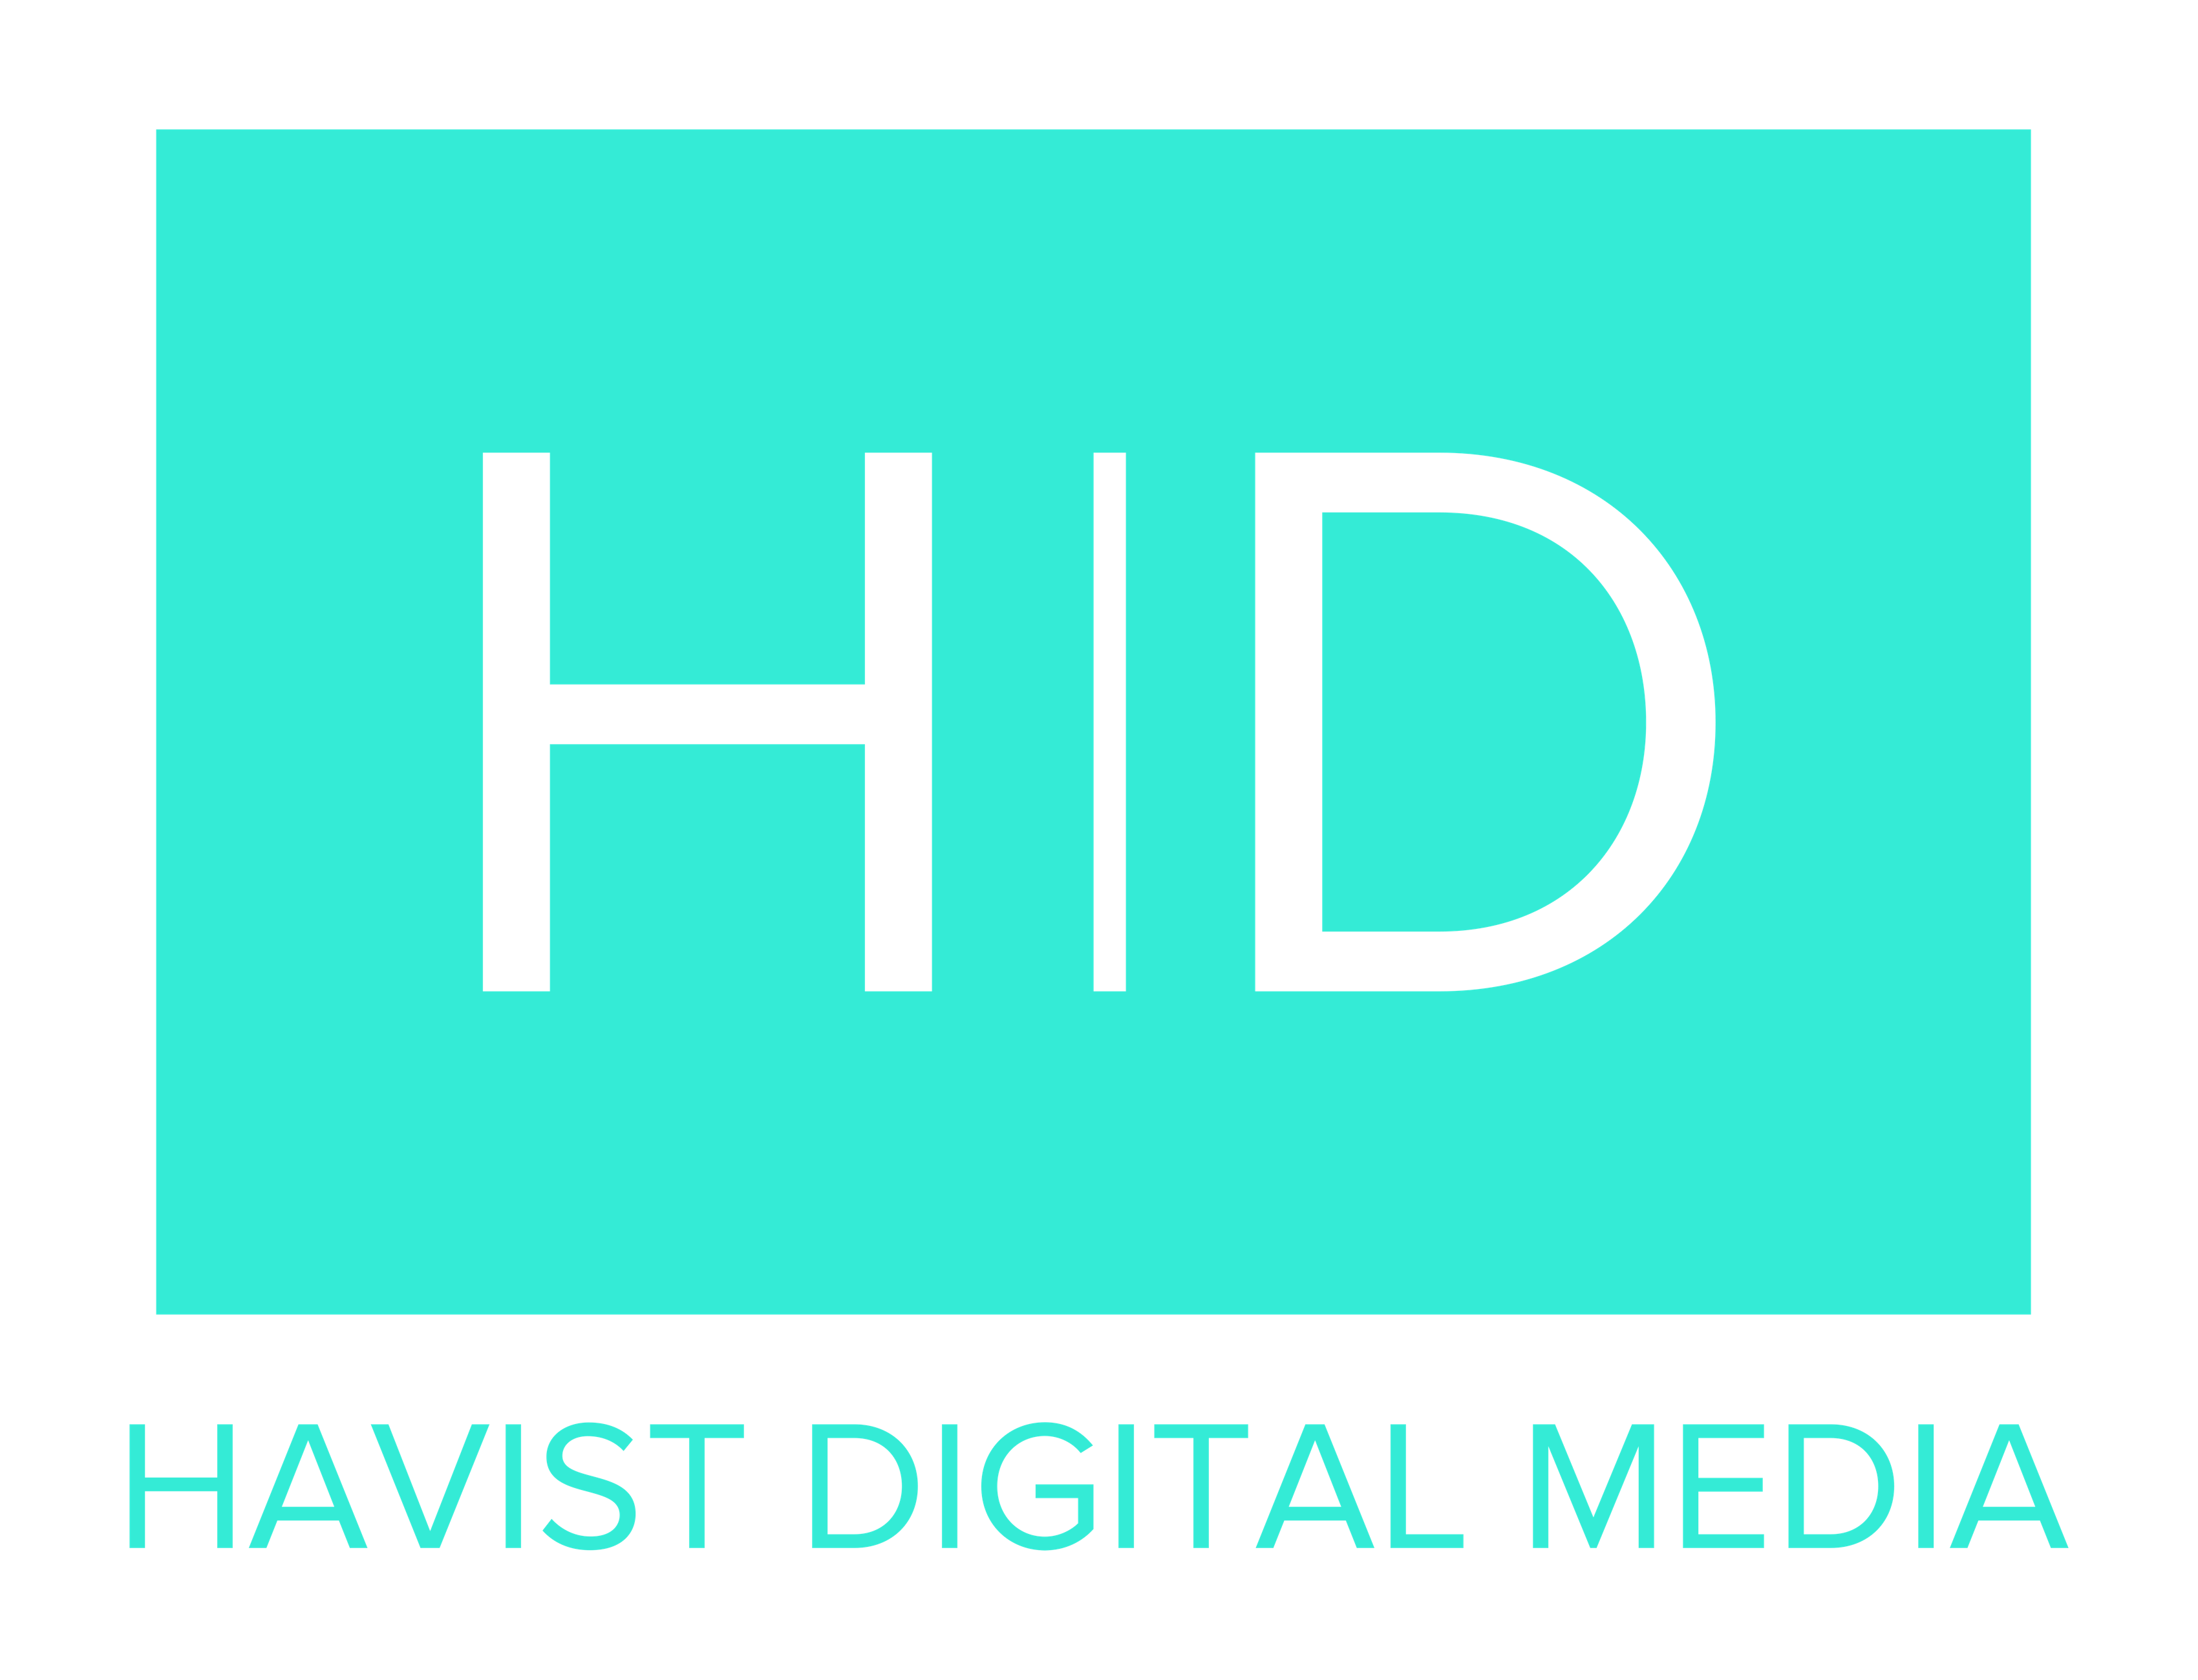 Havist Digital Media profile on Qualified.One